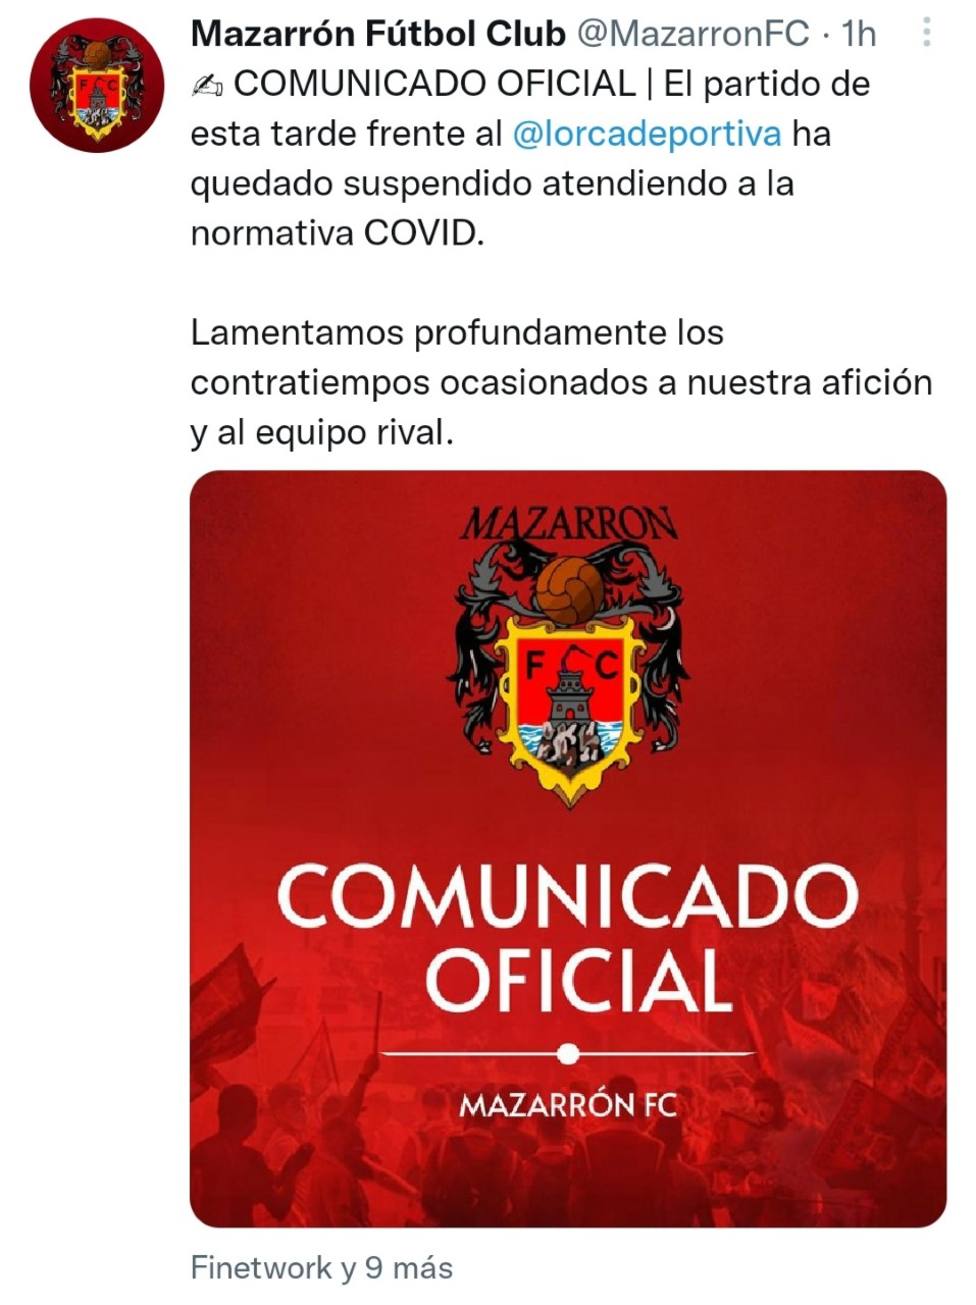 El Mazarrón FC - CF Lorca Deportiva, suspendido por COVID19